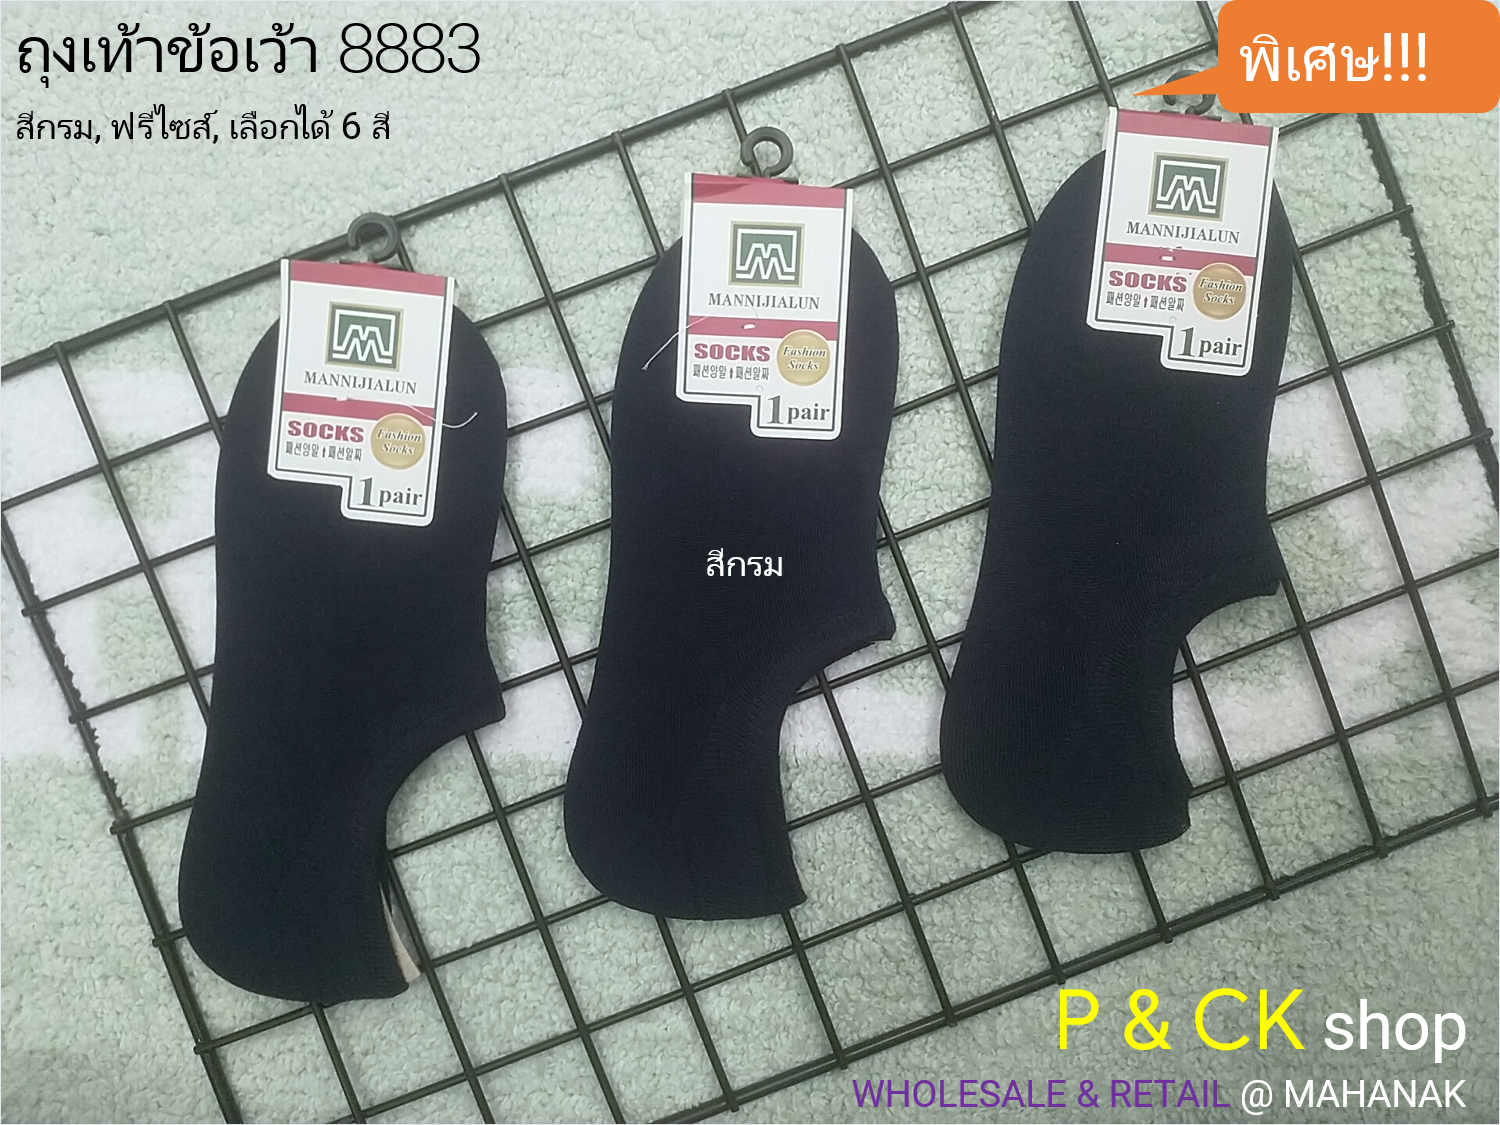 P & CK (official สาขา 2) / #8883 ถุงเท้าผู้ชายข้อเว้าฟรีไซส์ [ขายเป็นคู่]: สีพื้น, เลือกได้ 6 สี, กรุณาเลือกให้ดี [เลือกสีโปรดกด "เพิ่มลงรถเข็น"]